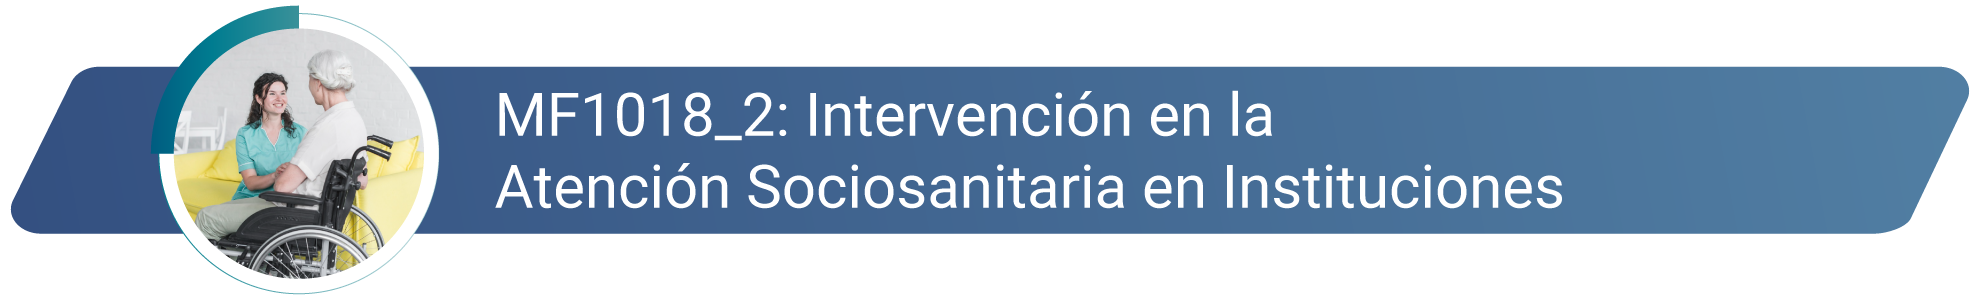 MF1018_2 Intervención Sociosanitaria